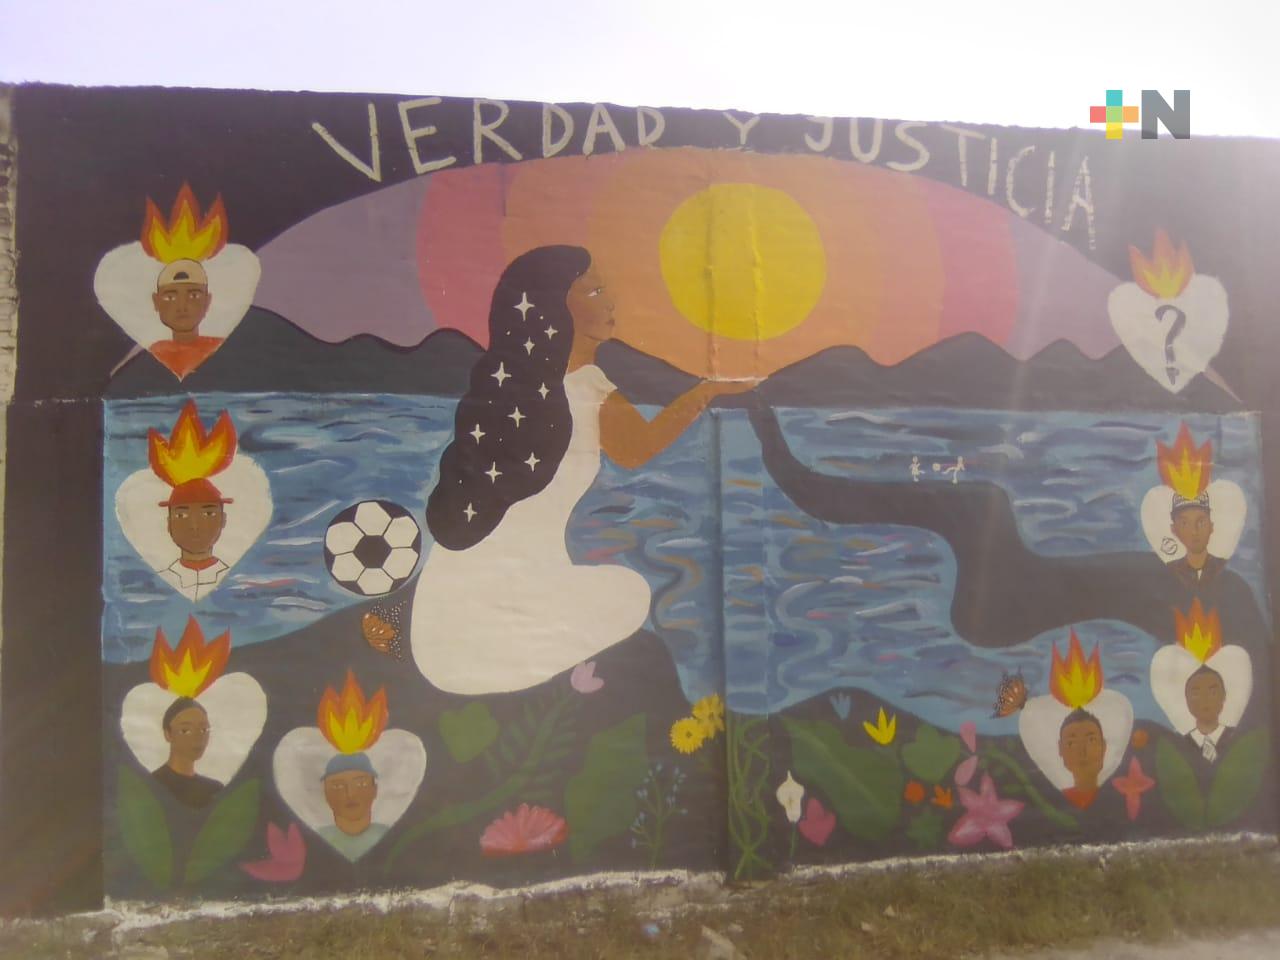 Mural recuerda a jóvenes desaparecidos en 2013 en Veracruz